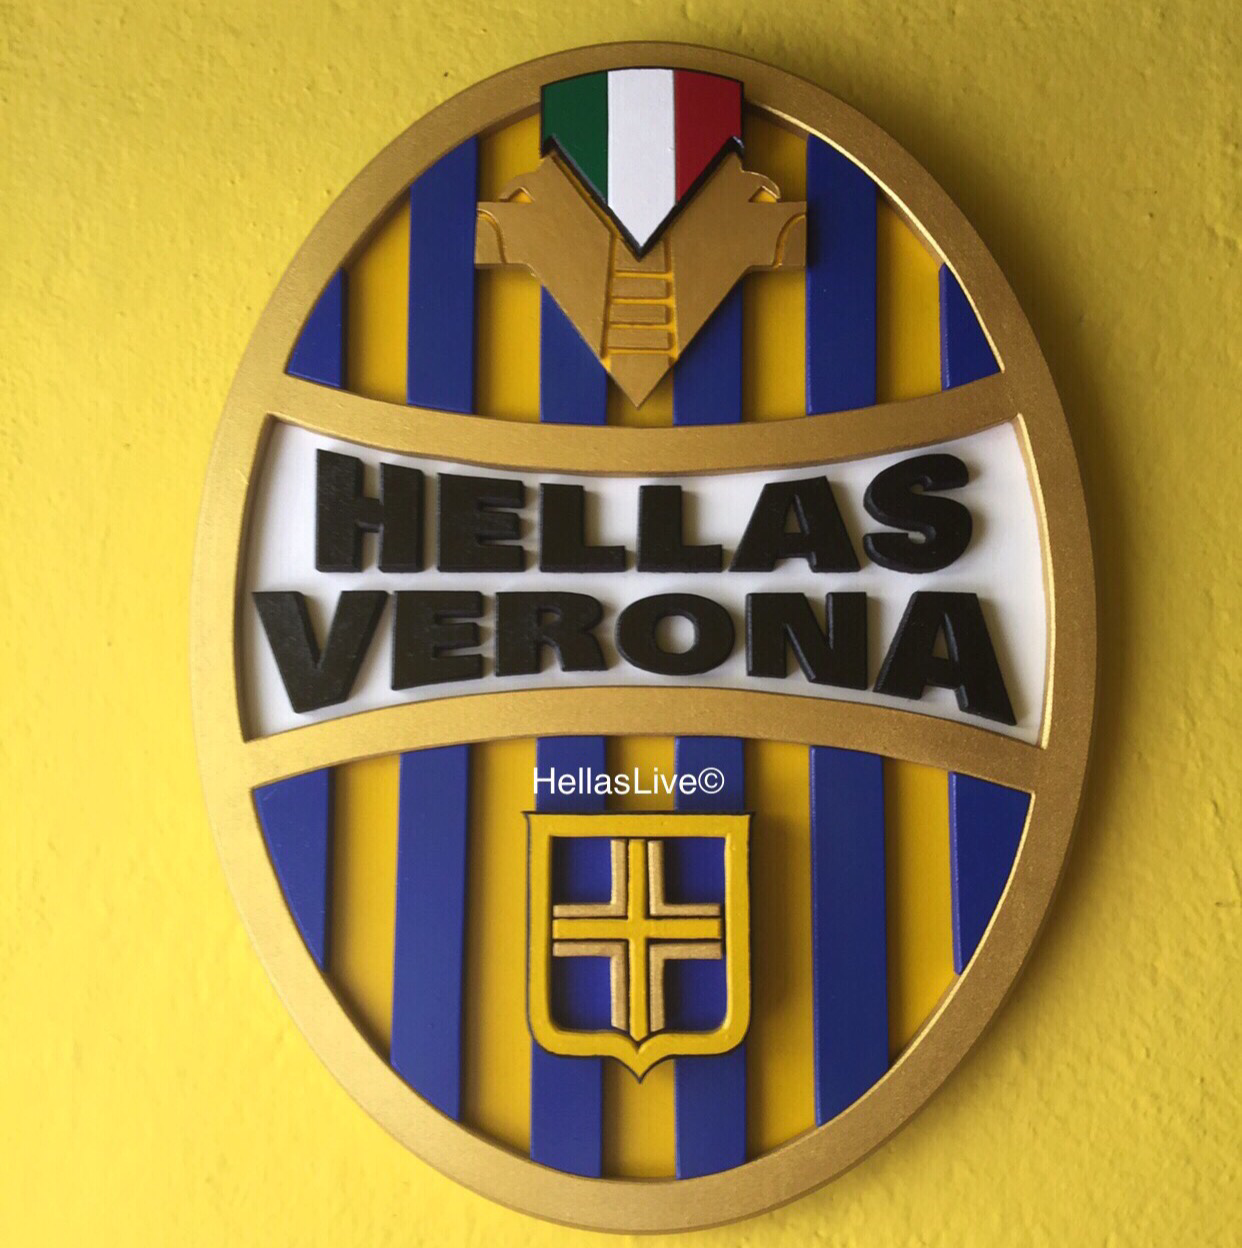 La stagione dell’Hellas Verona 2017/18 inizierà mercoledì 5 luglio